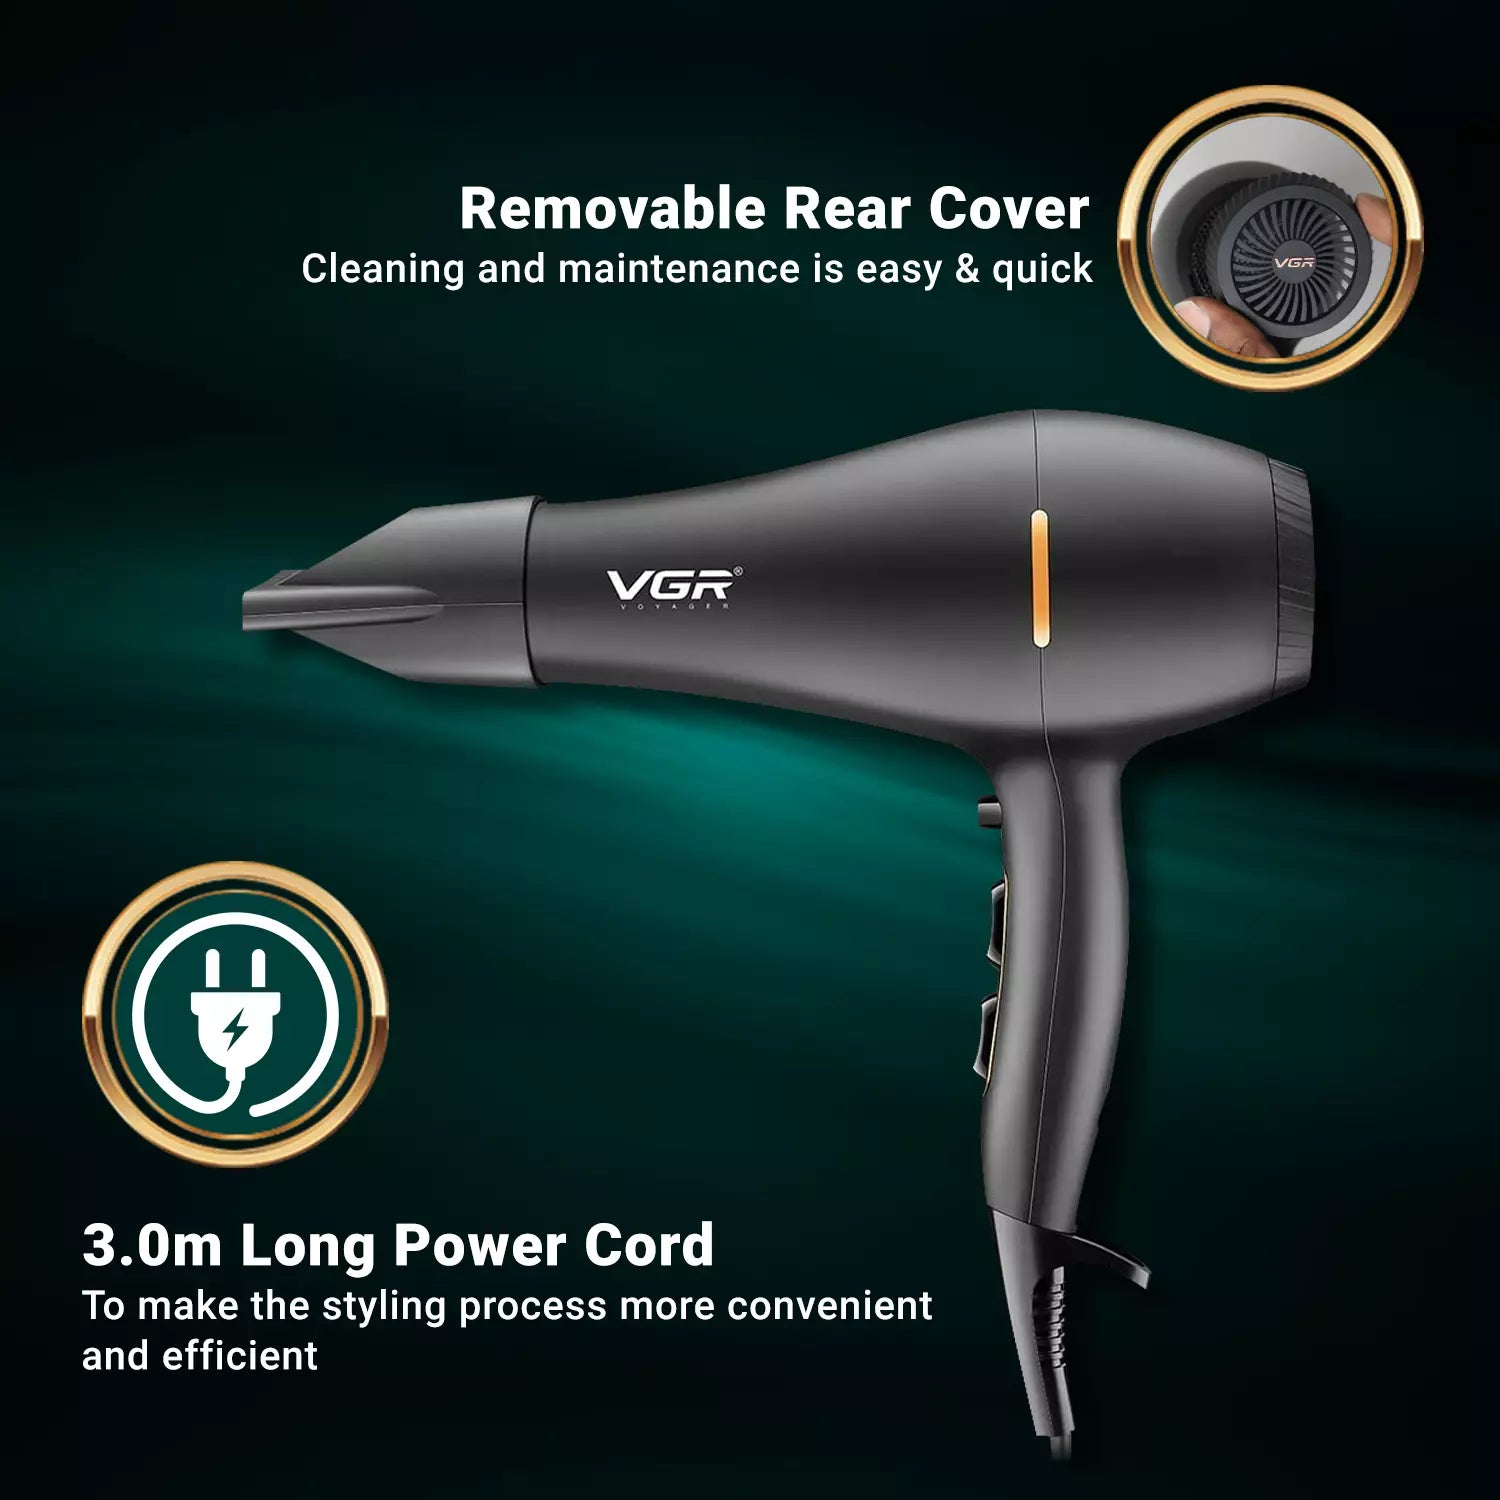 VGR V-433 Hair Dryer For Women, Black